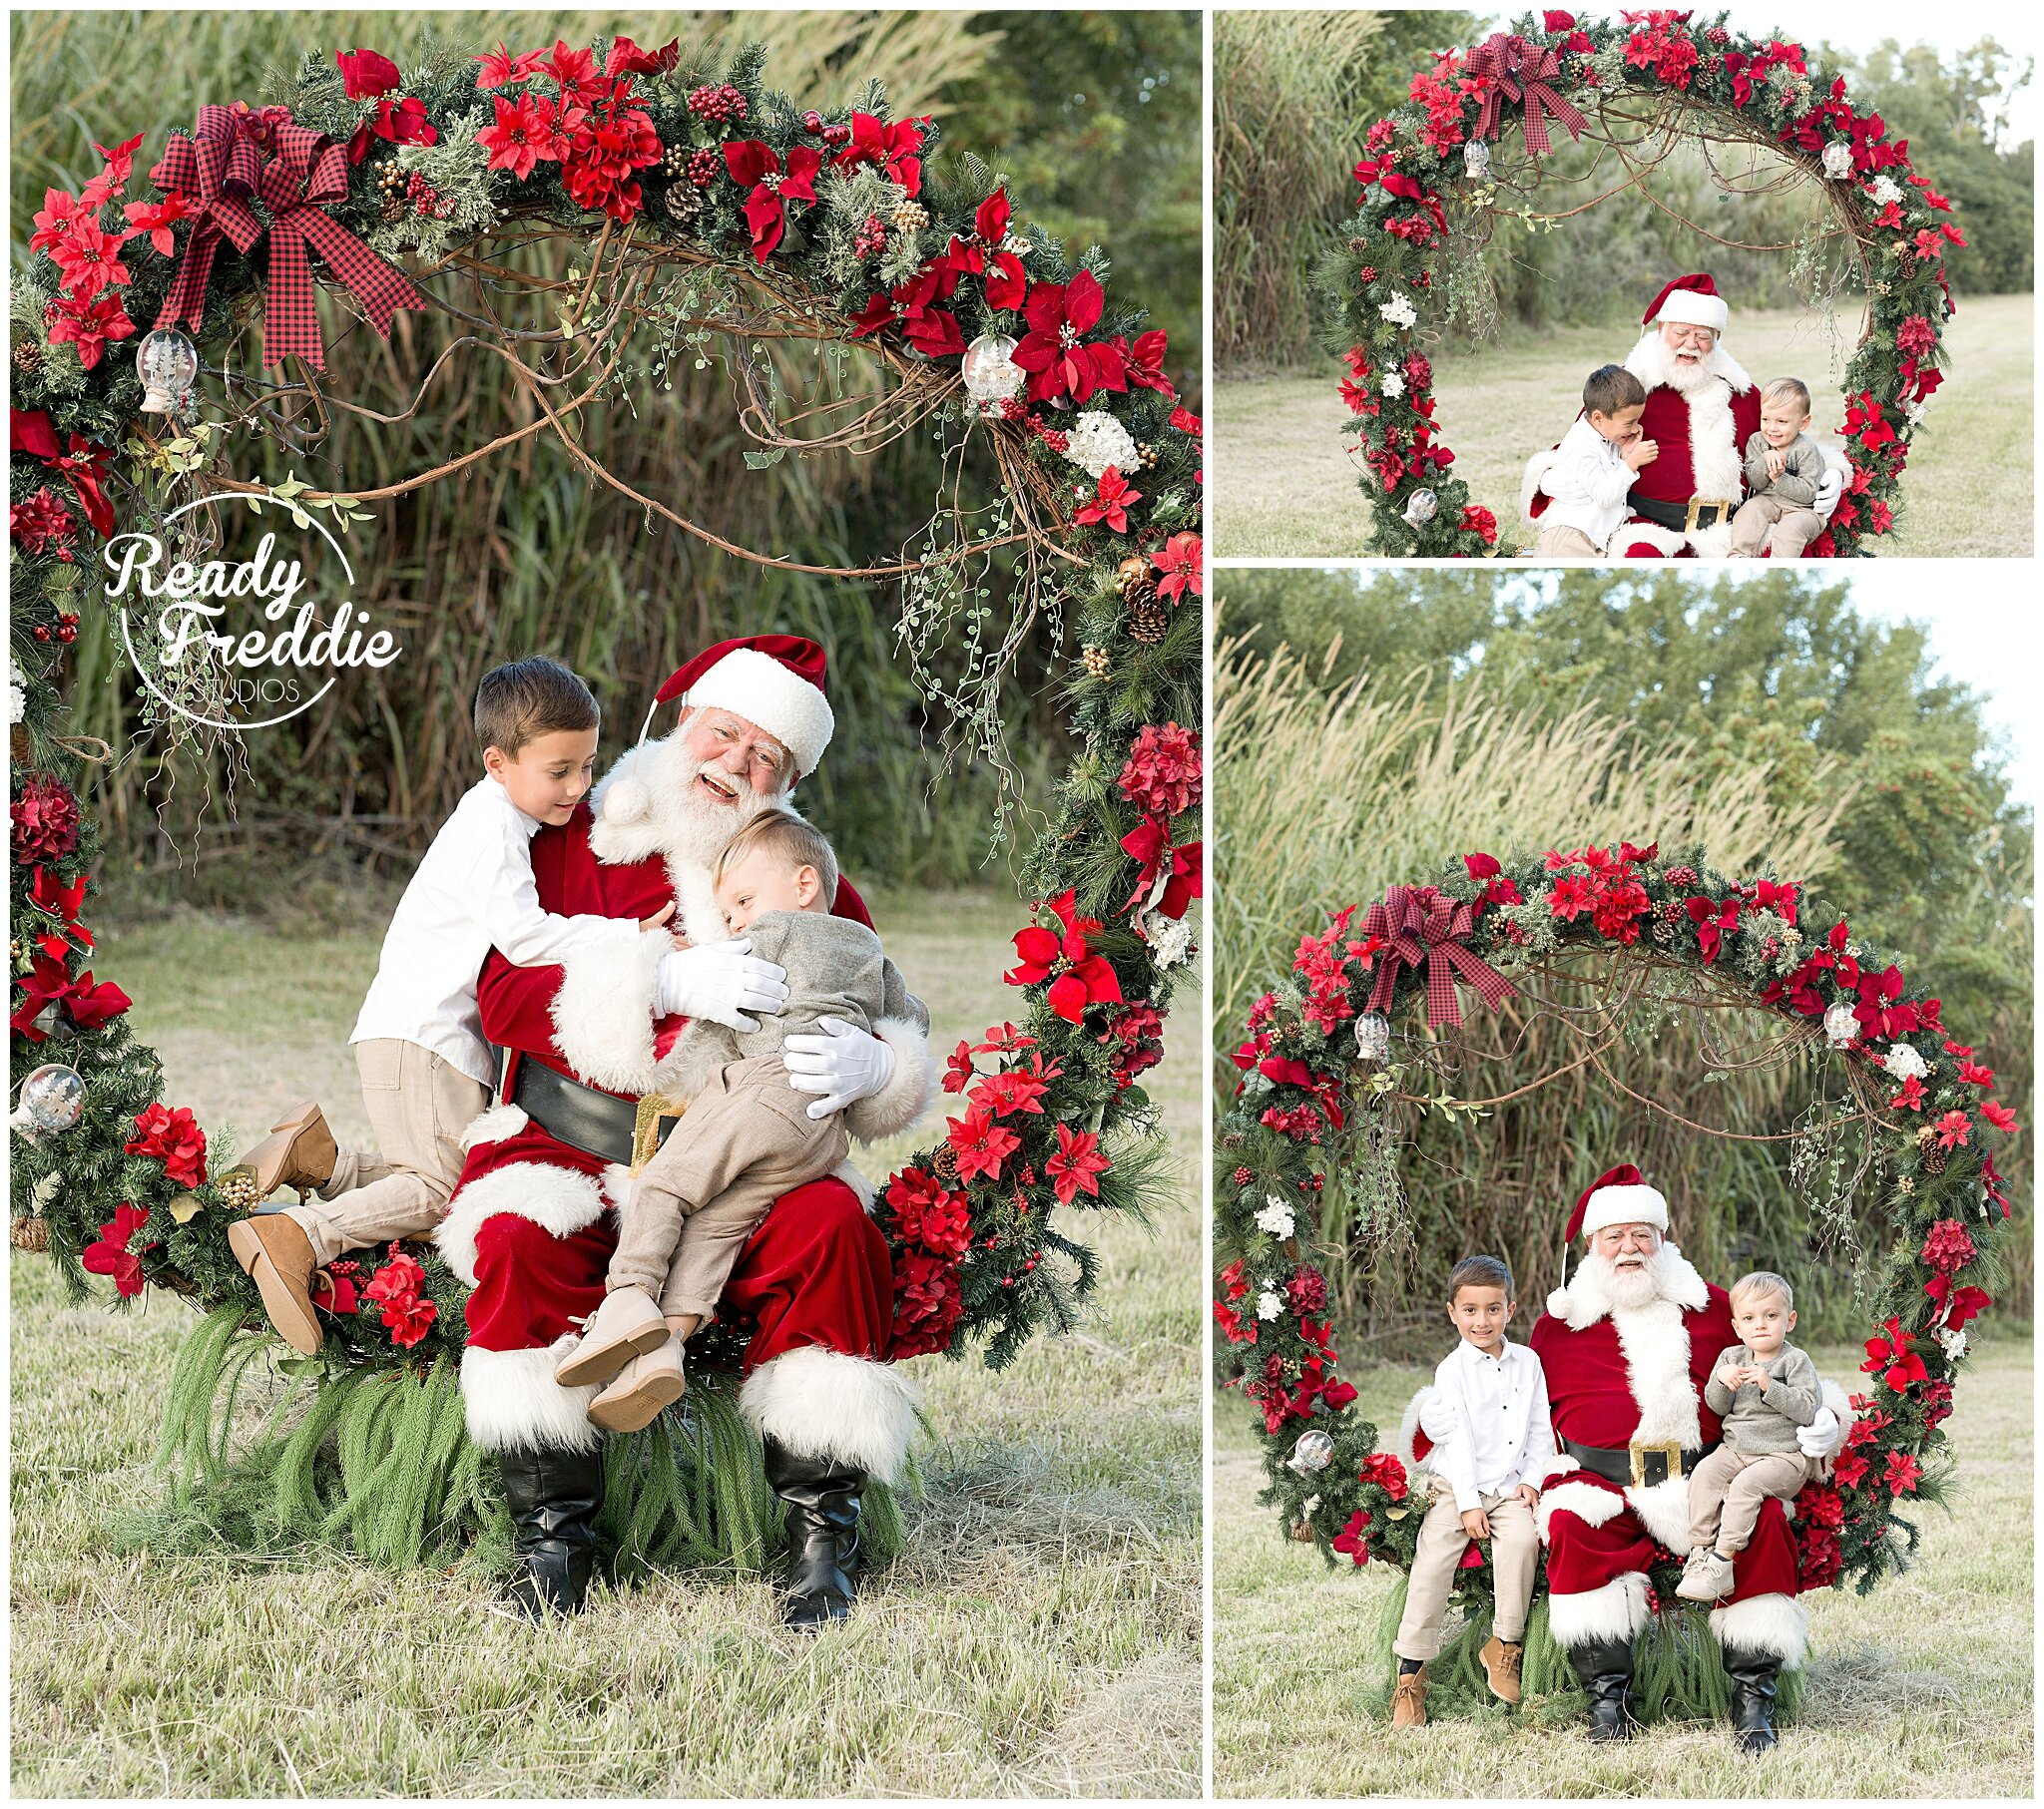 Santa pictures set up with giant wreath | Ready Freddie Studios Miami, FL